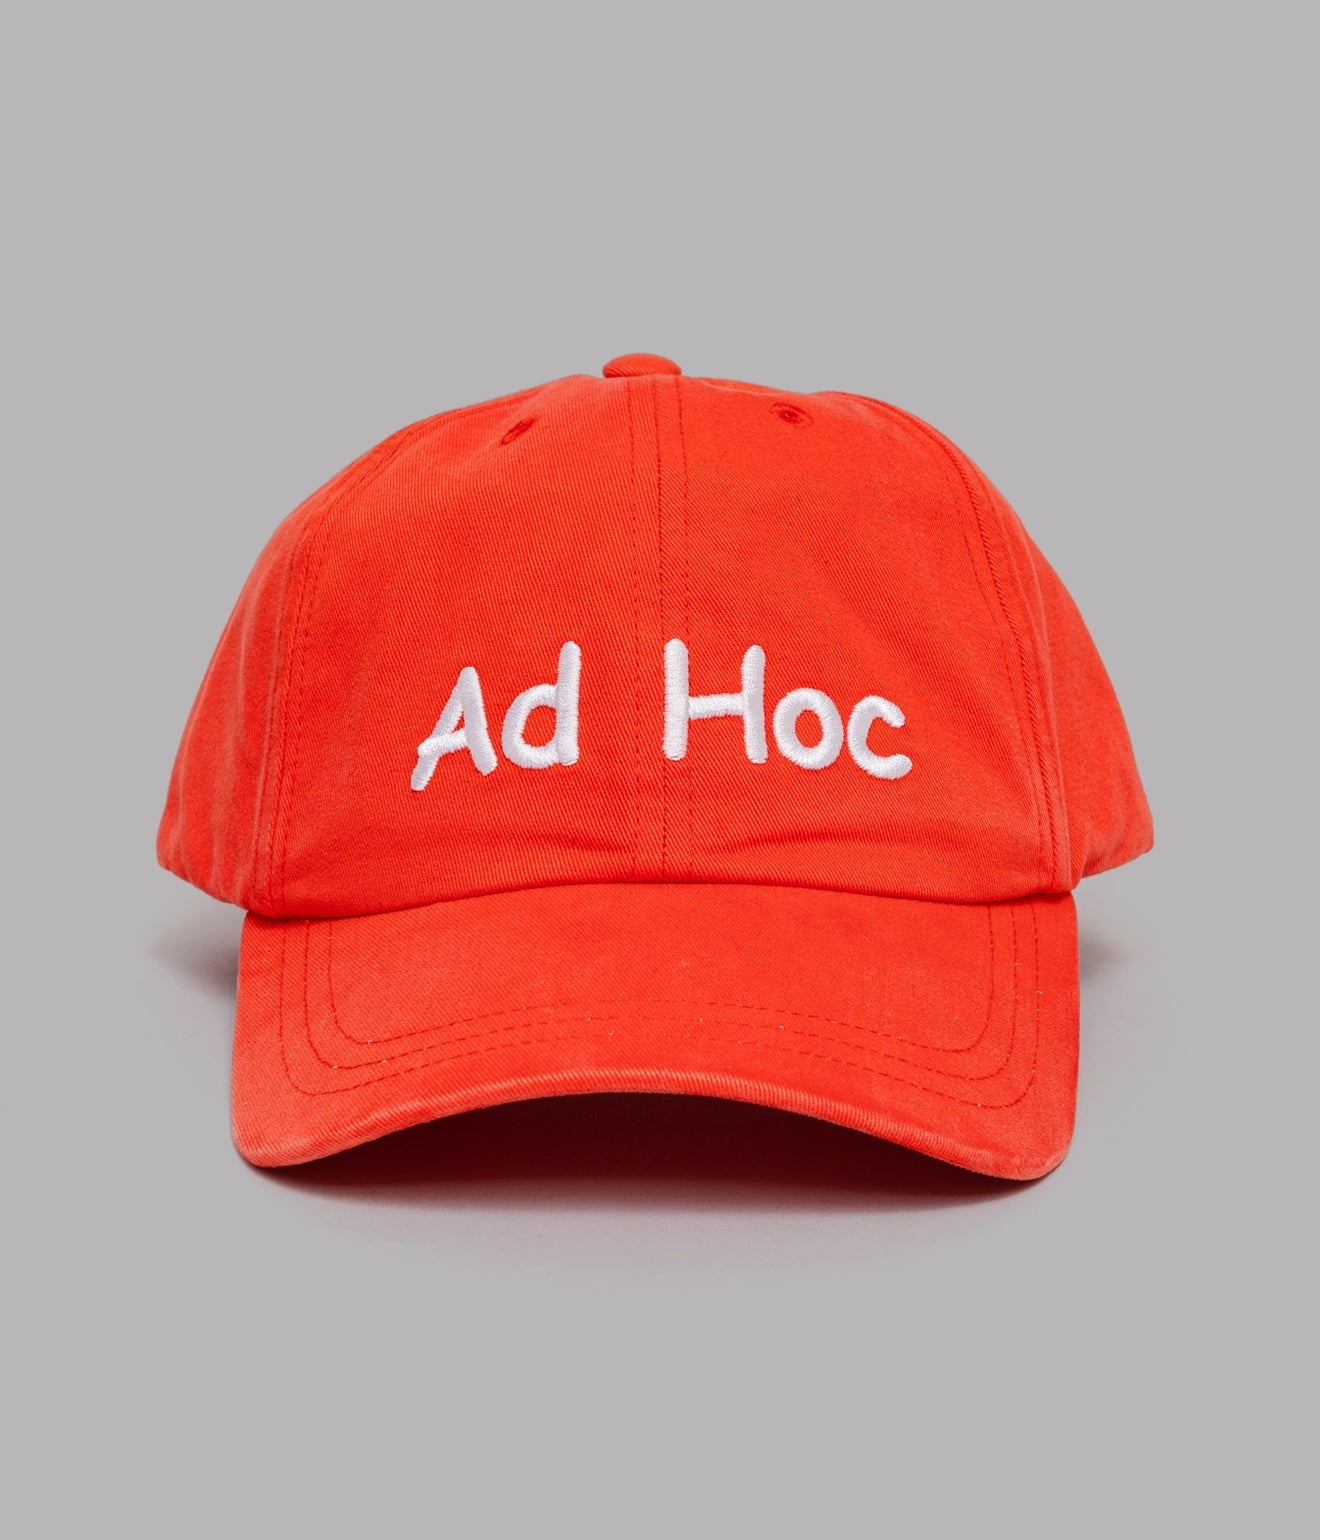 Public Possession "Ad Hoc" Cap - WEAREALLANIMALS